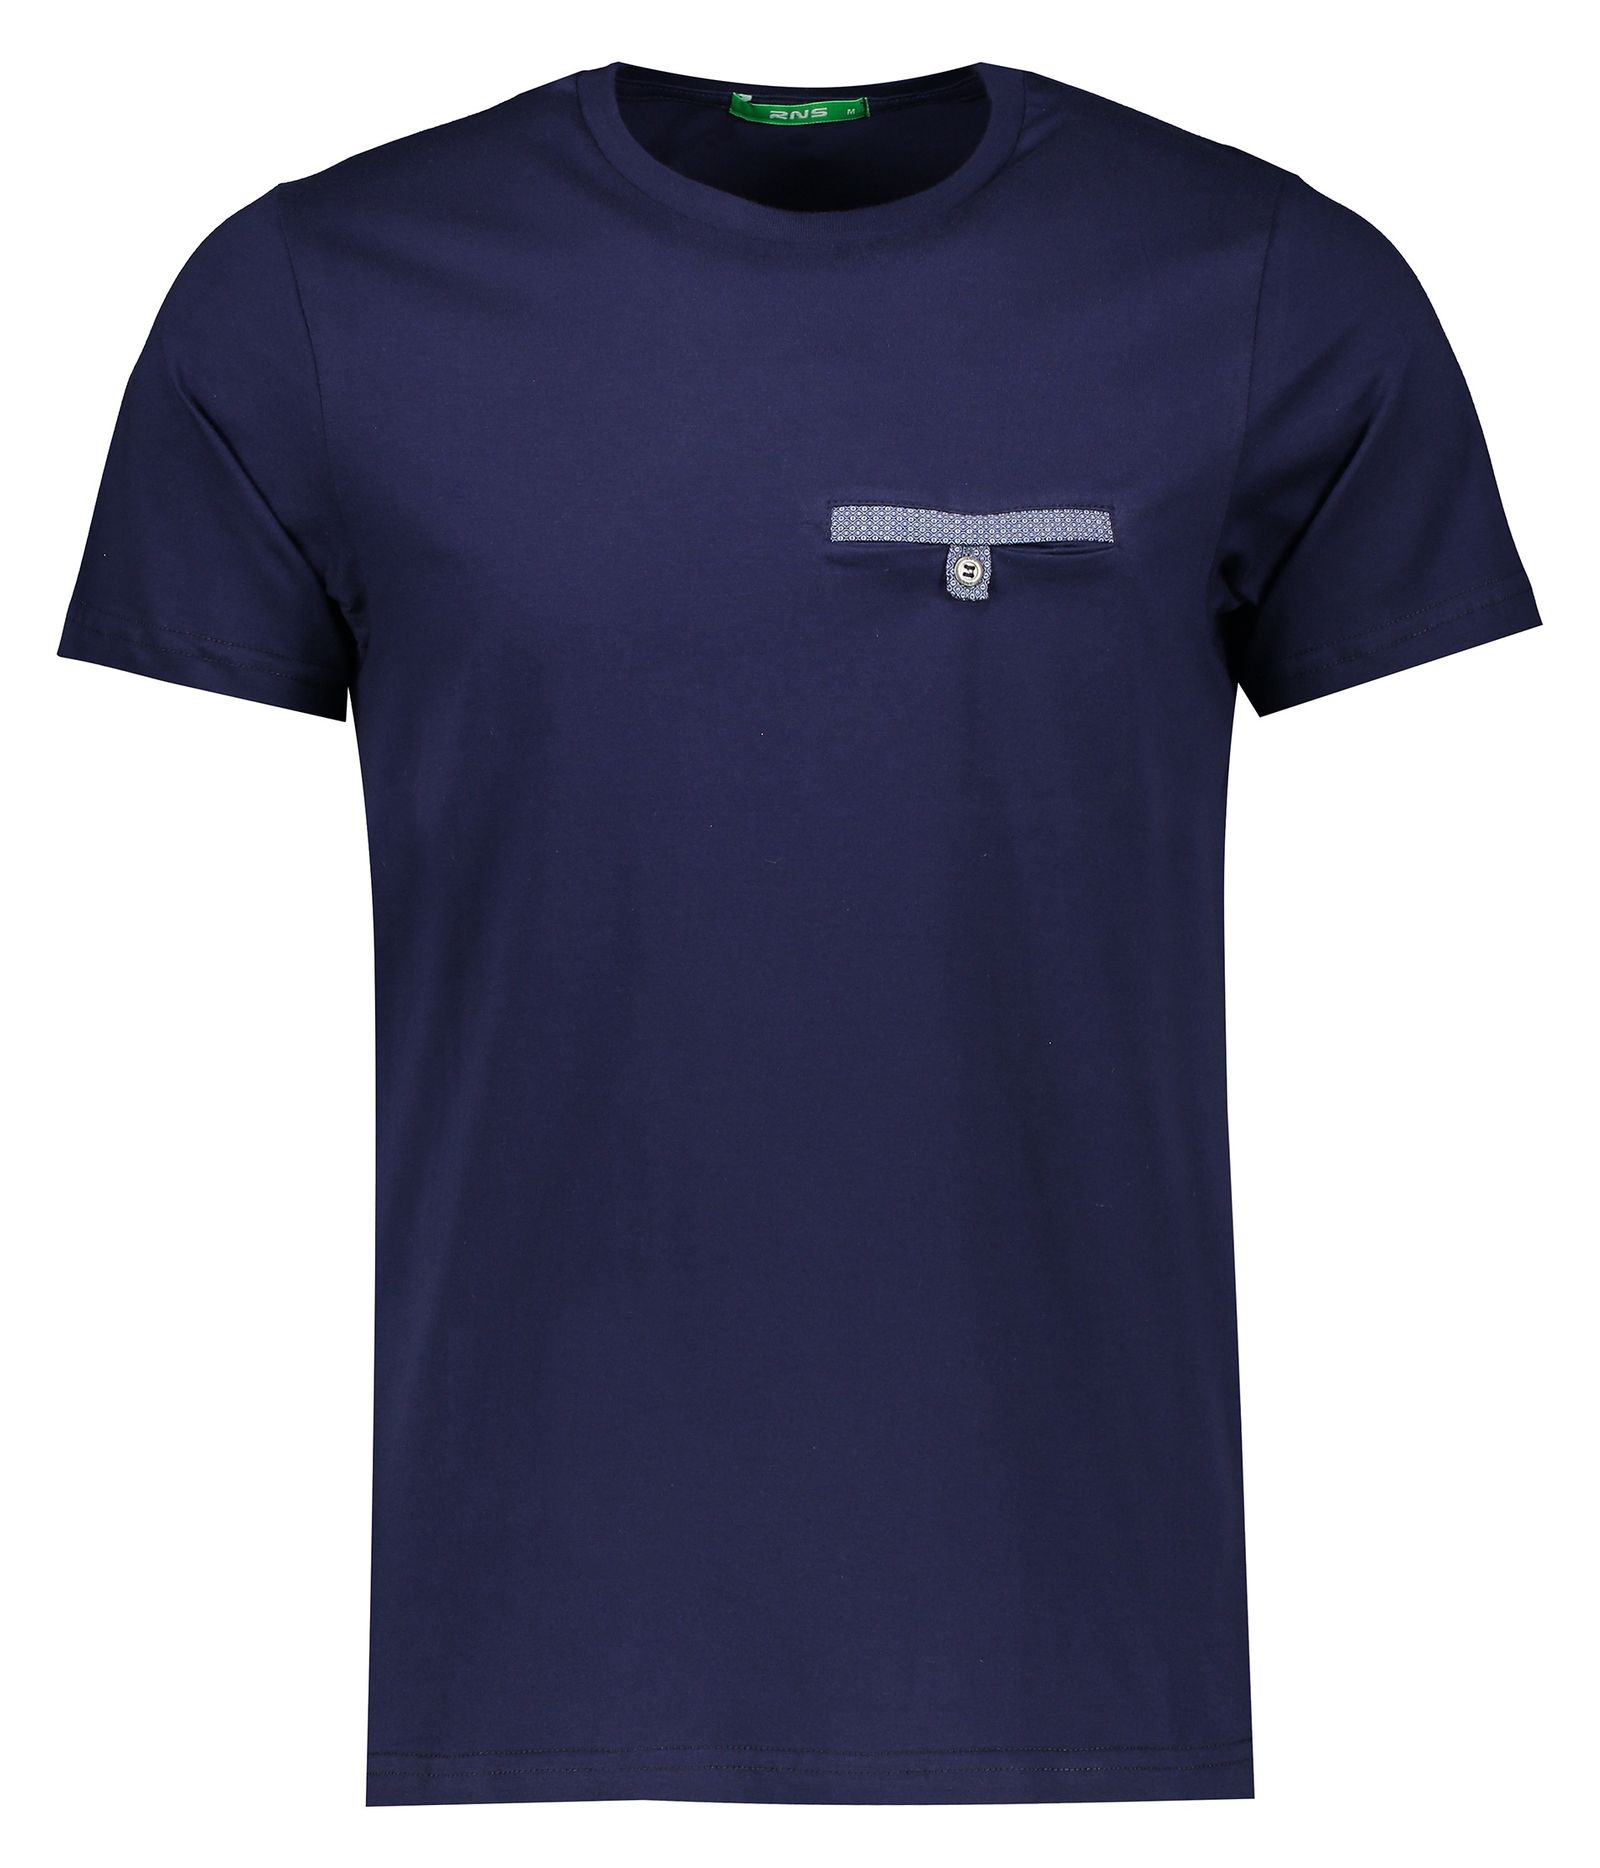 تی شرت مردانه آر ان اس مدل 1131116-59 -  - 1